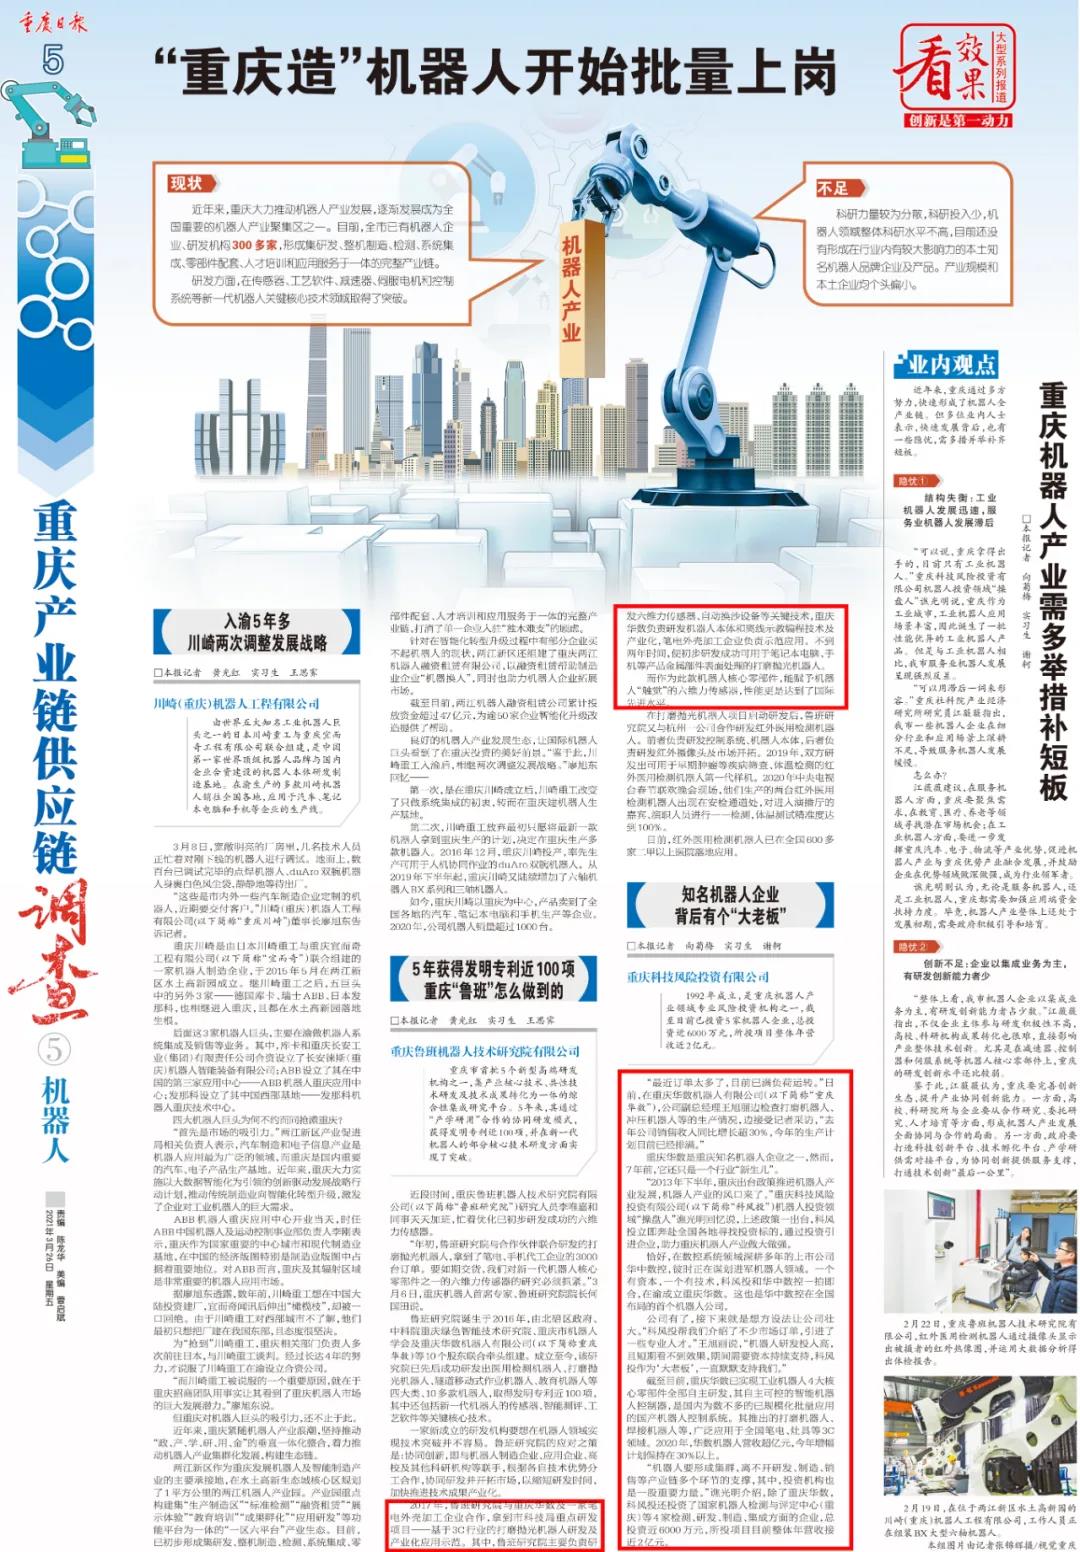 重庆日报报道华数机器人|“重庆造”机器人批量上岗